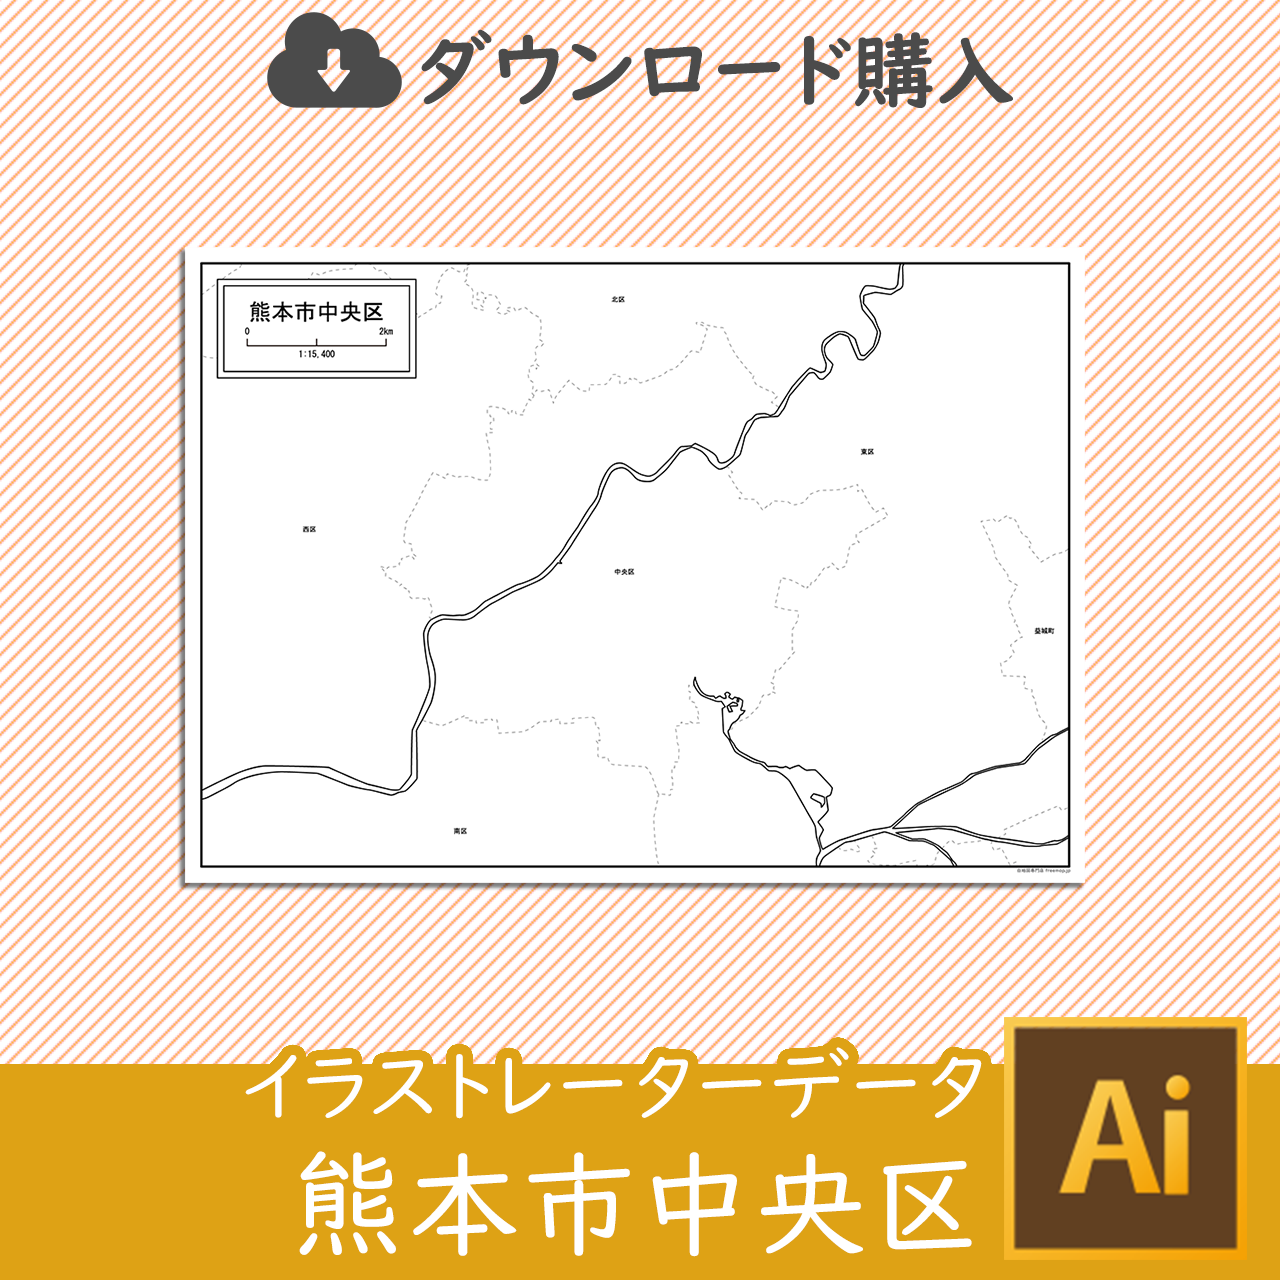 熊本市中央区のaiデータのサムネイル画像